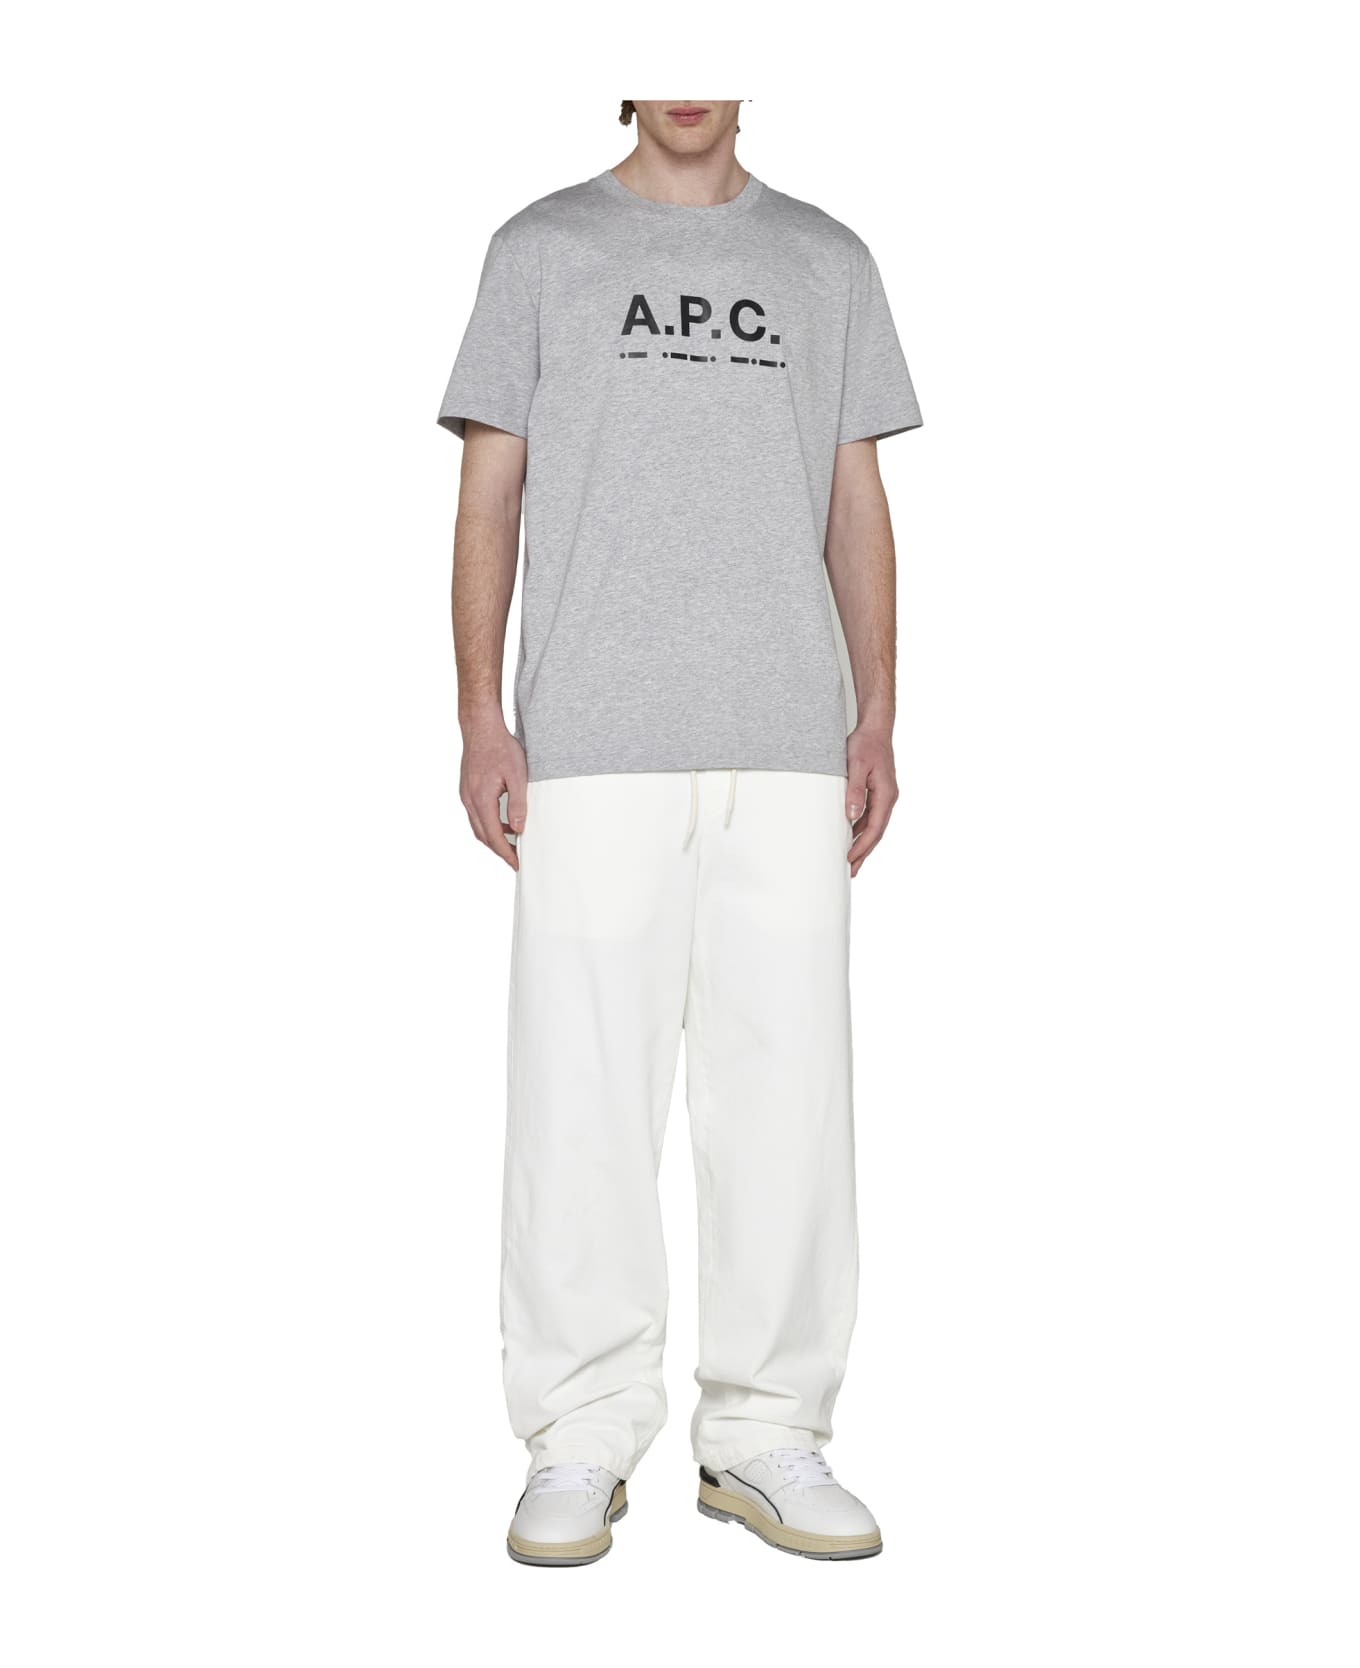 A.P.C. Sven T-shirt - Heathered grey